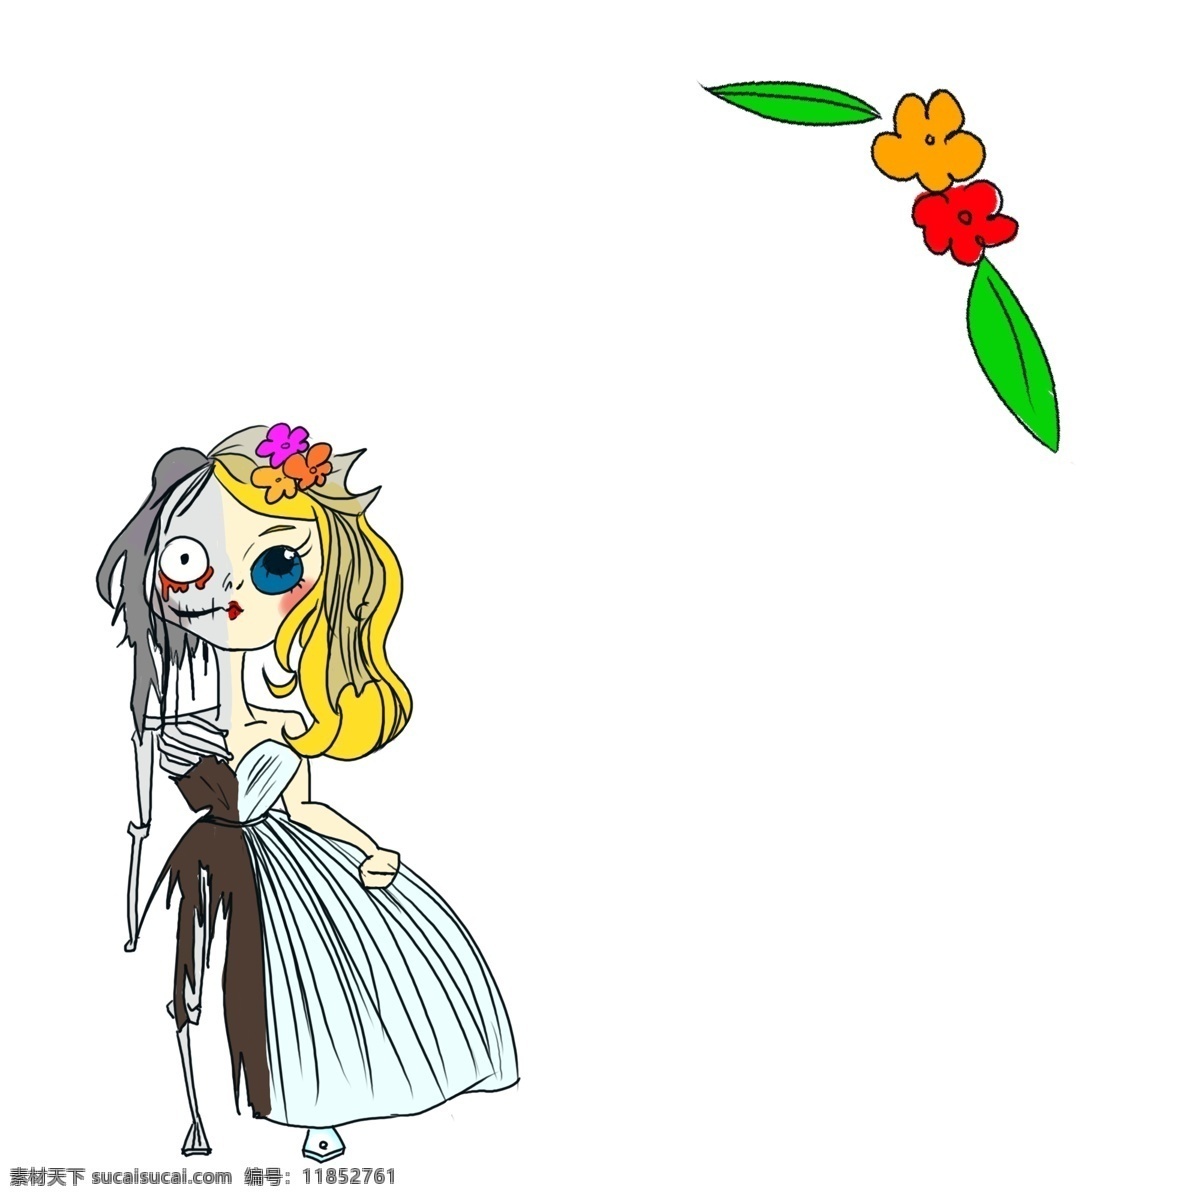 万圣节 卡通 手绘 插画 边框 绿色的叶子 植物 手绘插画 僵尸新娘 化妆误会 橙色的花朵 可爱的公主 恐怖的丧尸